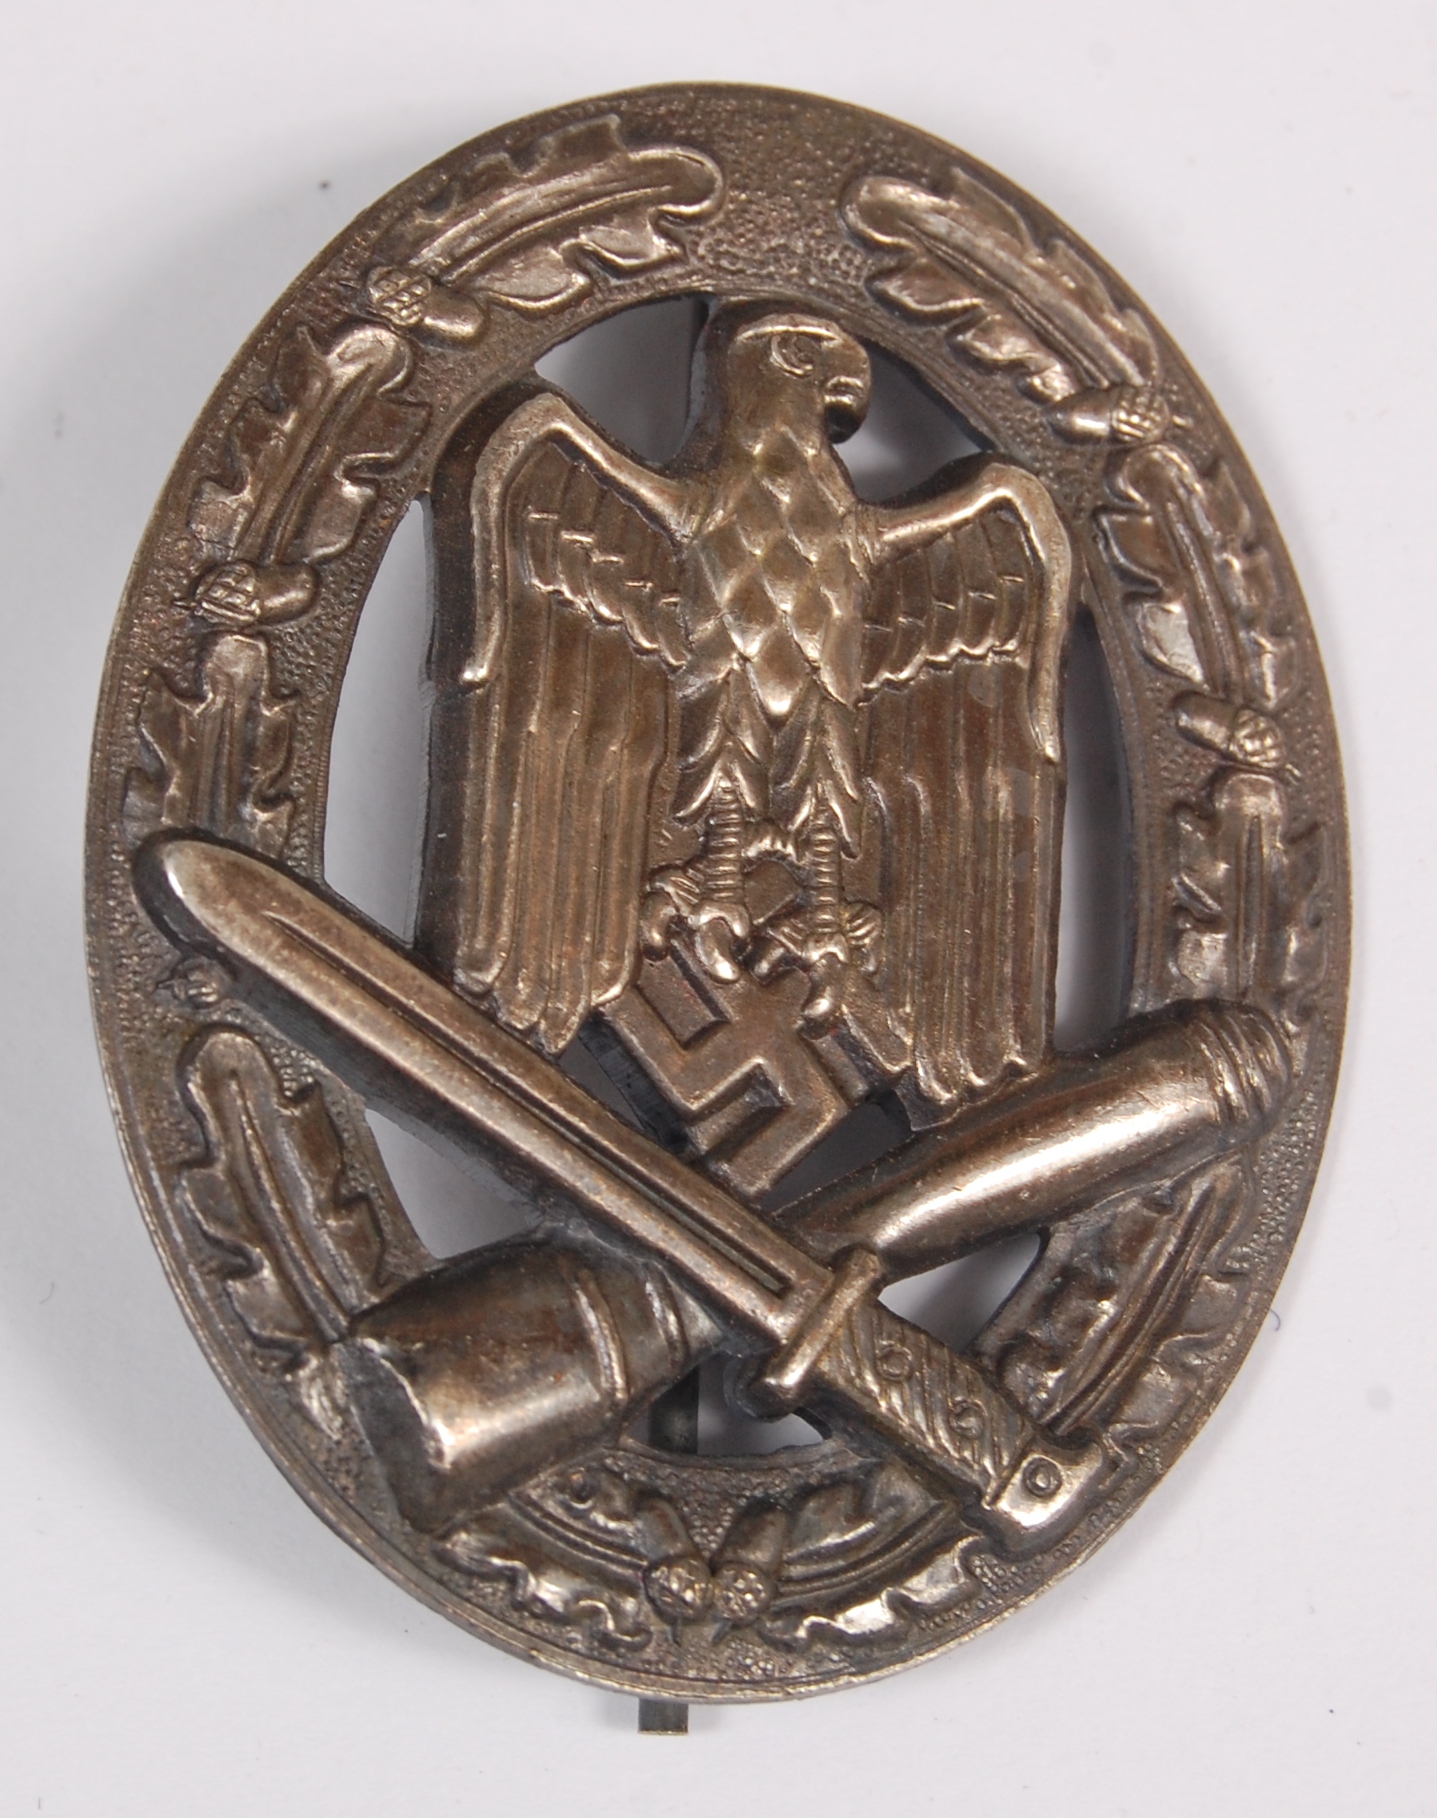 A German General Assault Combat badge.